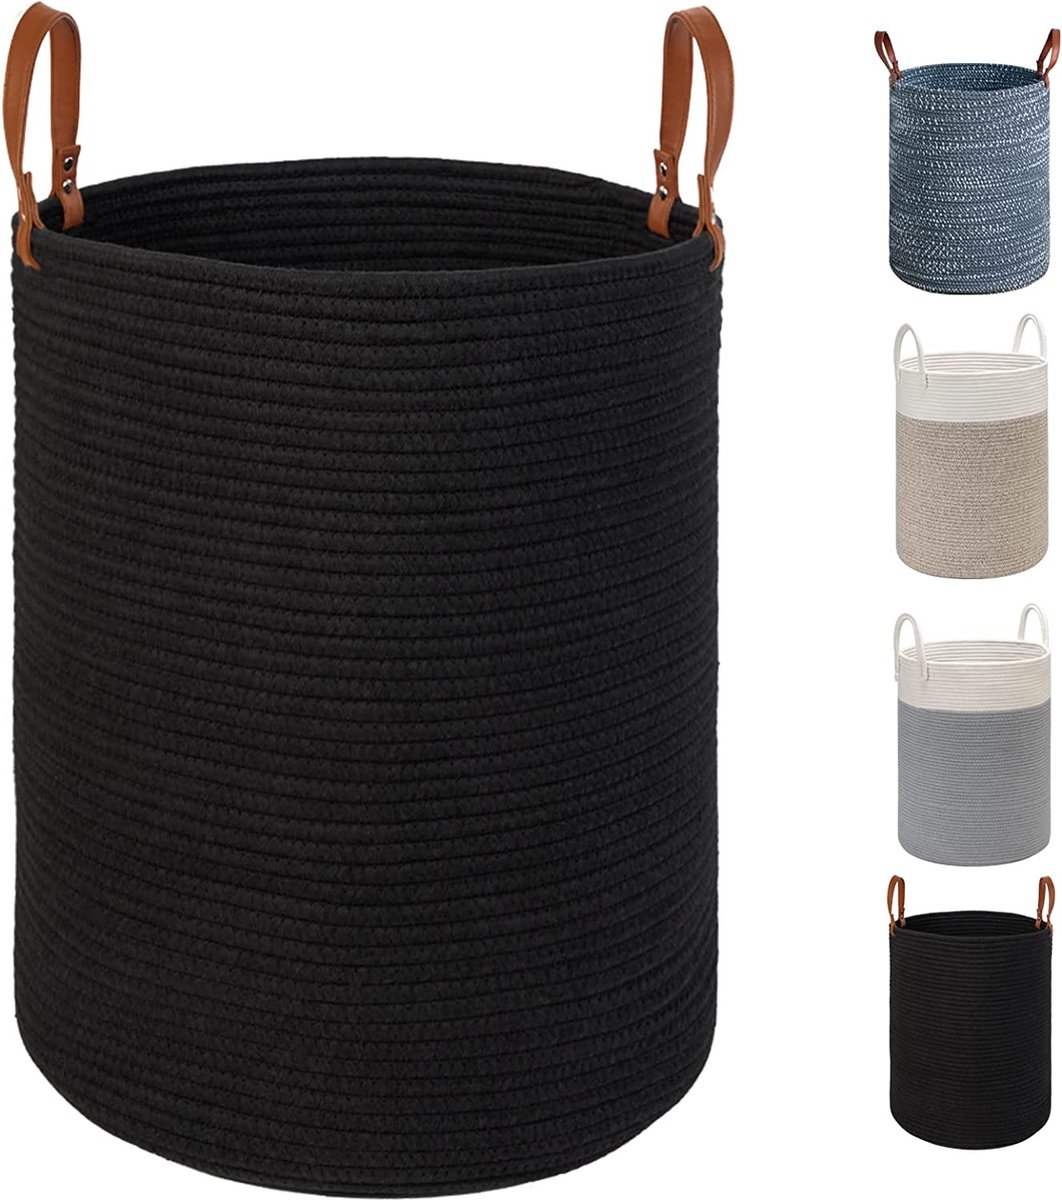 Grote wasmand van katoenen touw - 40 cm (D) x 50 cm (H) - inklapbare geweven mand met lederen handgrepen voor het opbergen van kleding, luiers, speelgoed (zwart)